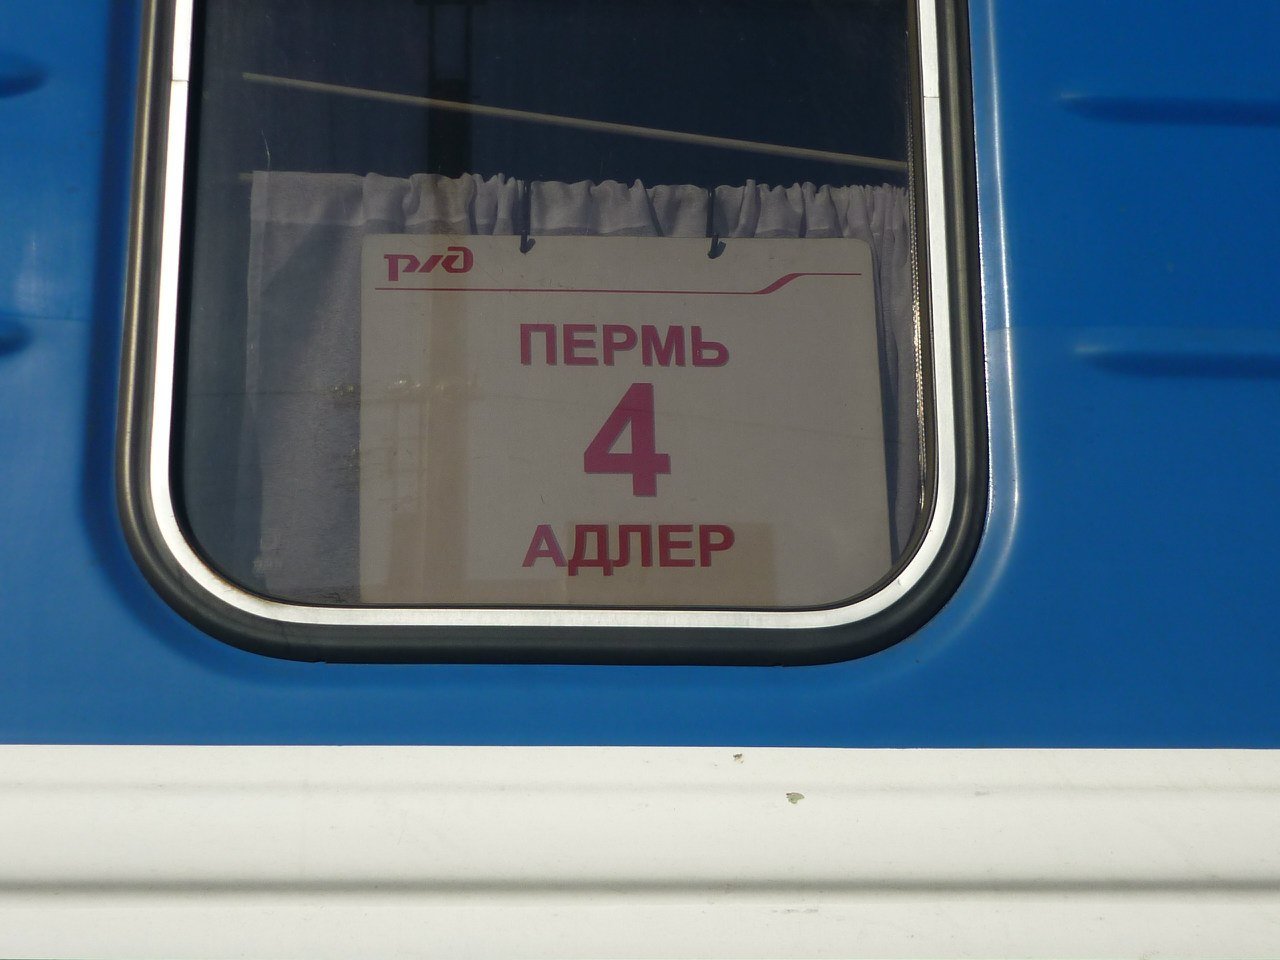 Фото купе поезда пермь адлер